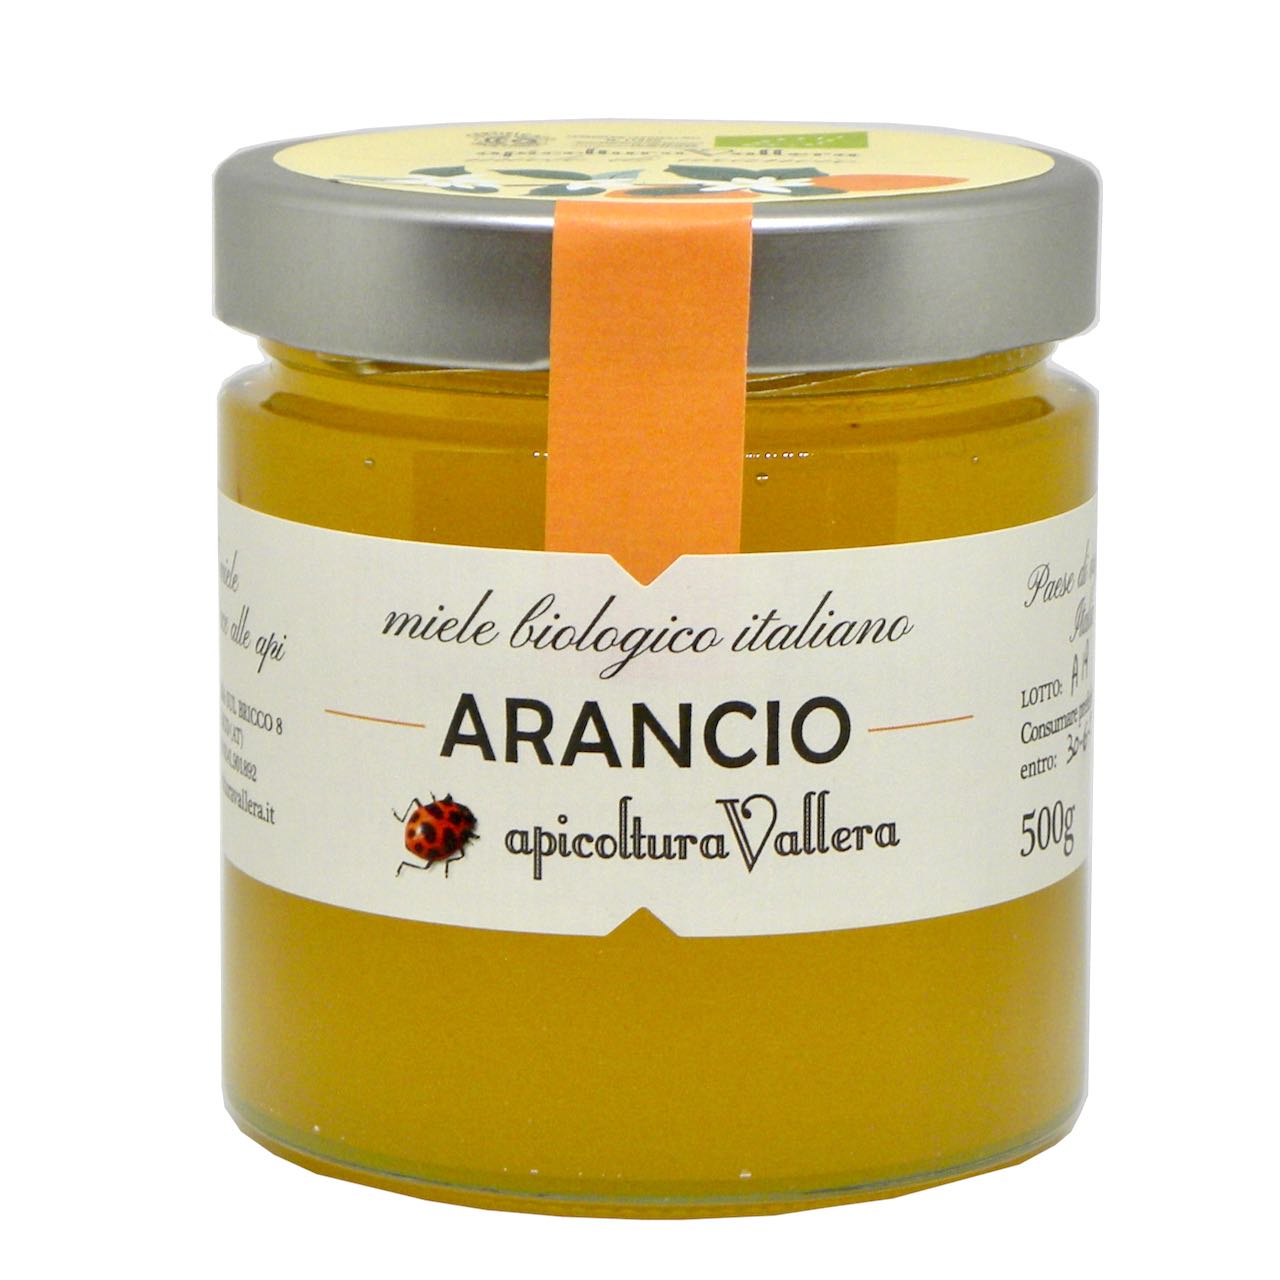 miele arancio bio – Apicoltura Vallera –  Gustorotondo – spesa online – buono sano artigiano